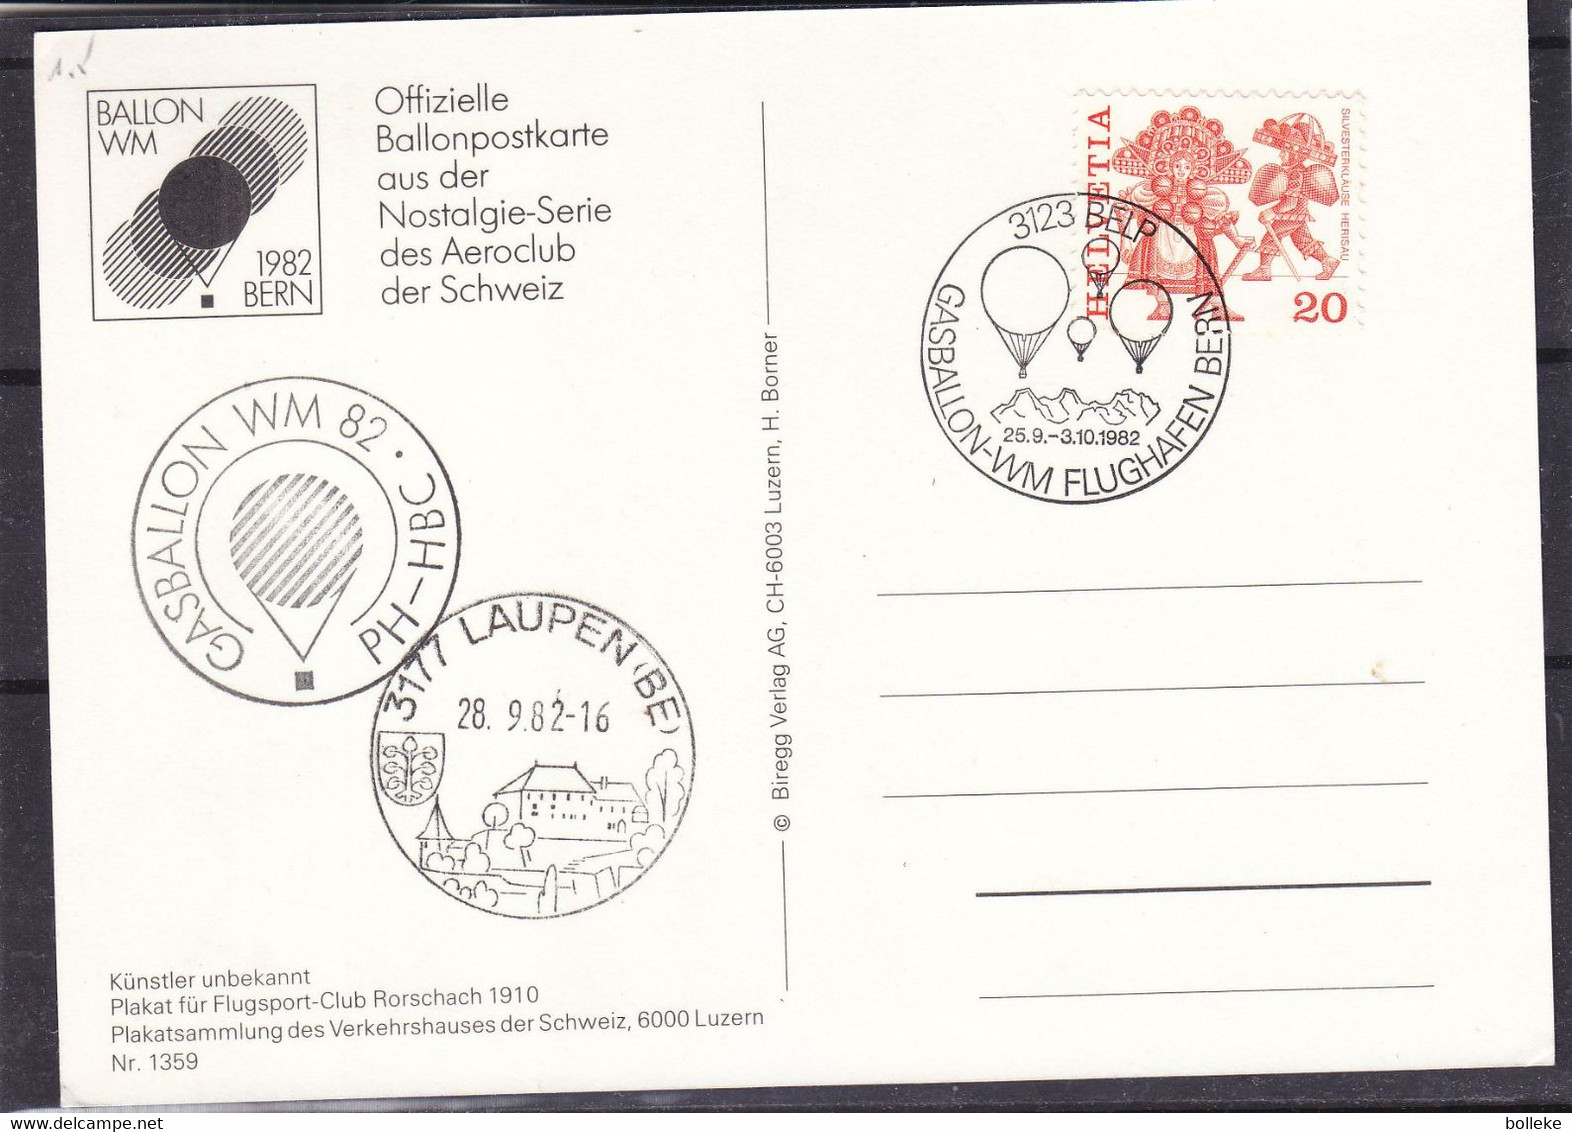 Montgolfières - Suisse - Carte Postale De 1982 - Oblit Belp - Vol Par Ballon - Cachet De Laupen - Airships